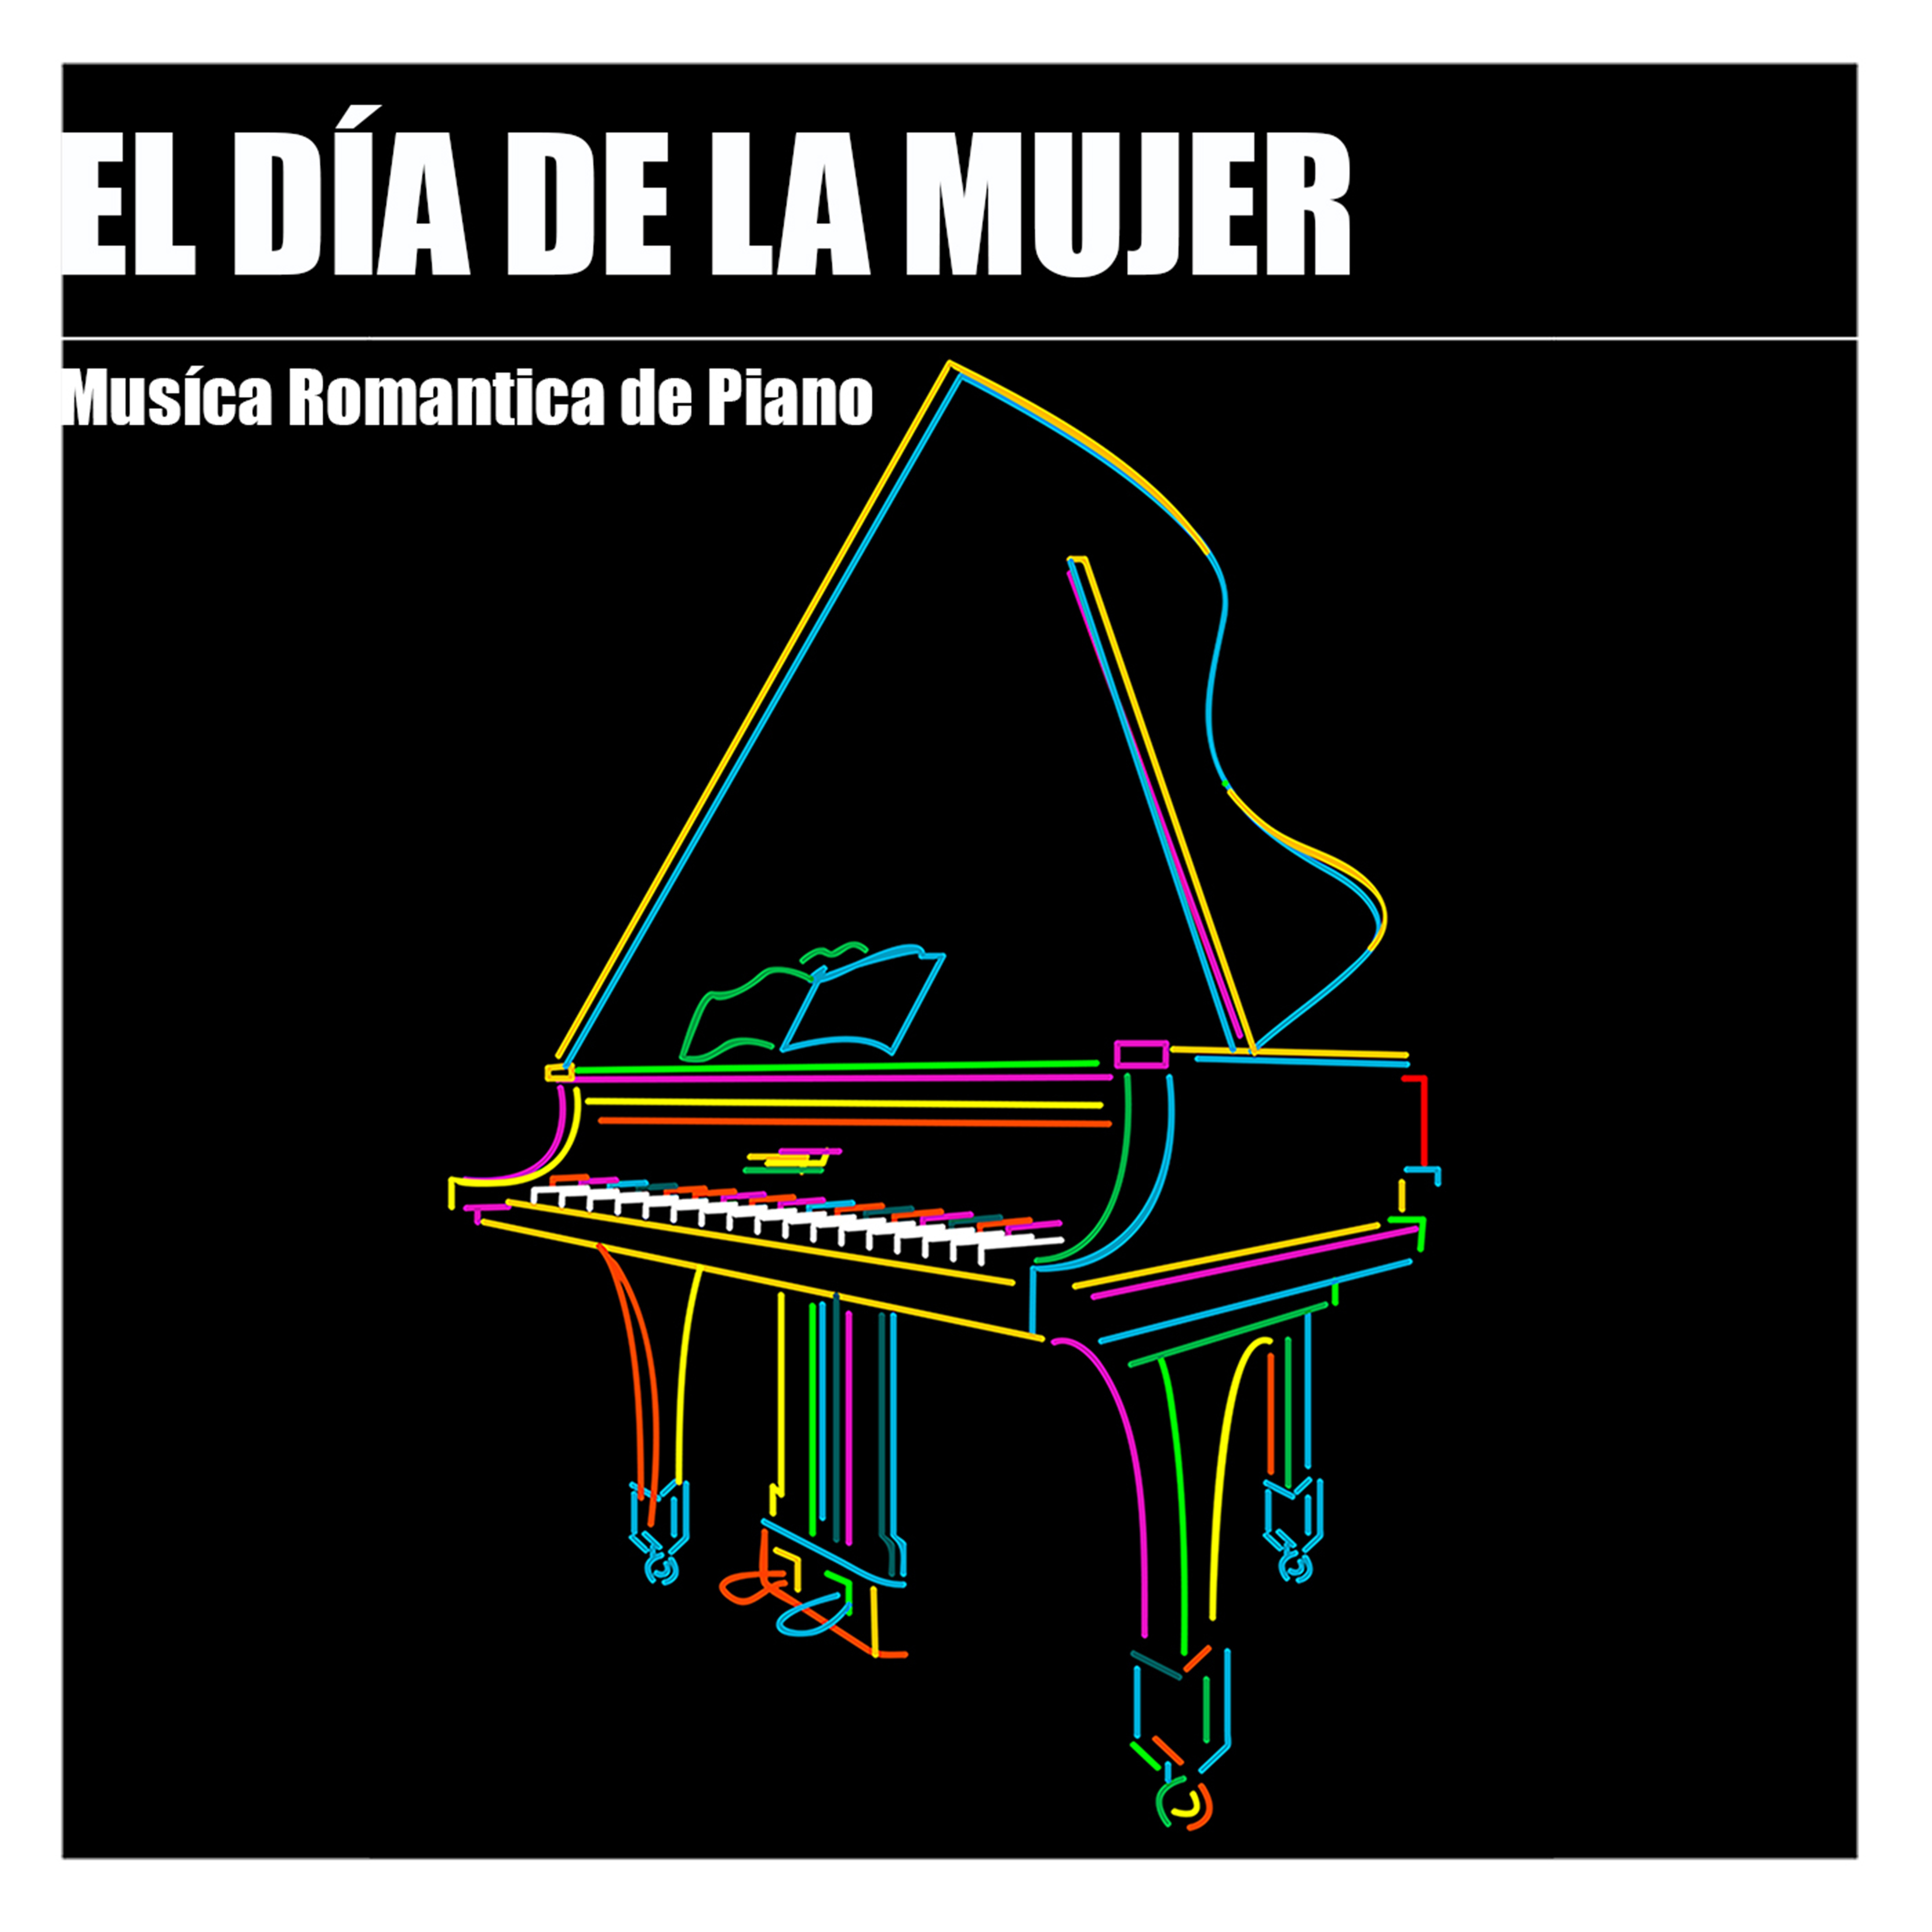 El Día de la Mujer - Música Romántica de Piano para Cena Romántica en el Día Internacional de la Mujer el 8 de Marzo, la Mejor Música y Canciones Románticas para la Mujer